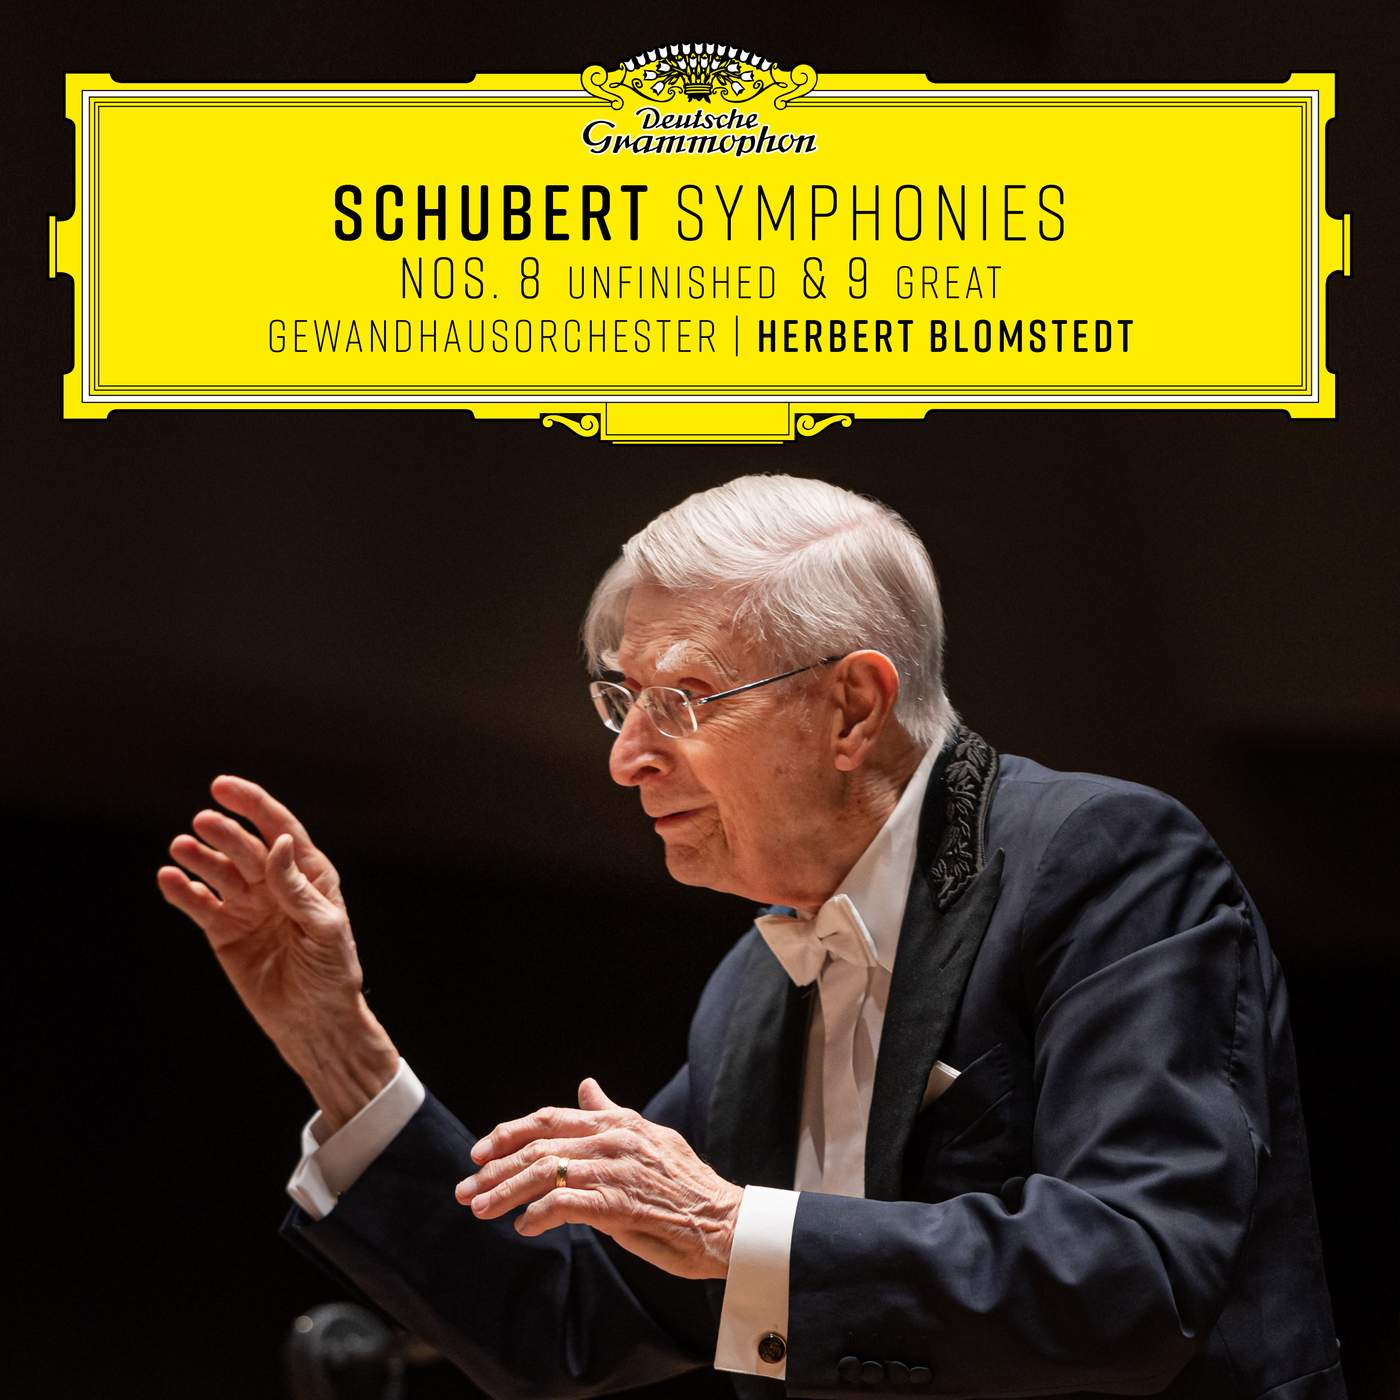 Schubert Symphonies Nos. 8 & 9 - DG,Gewandhausorchester,Herbert Blomstedt (24-96)